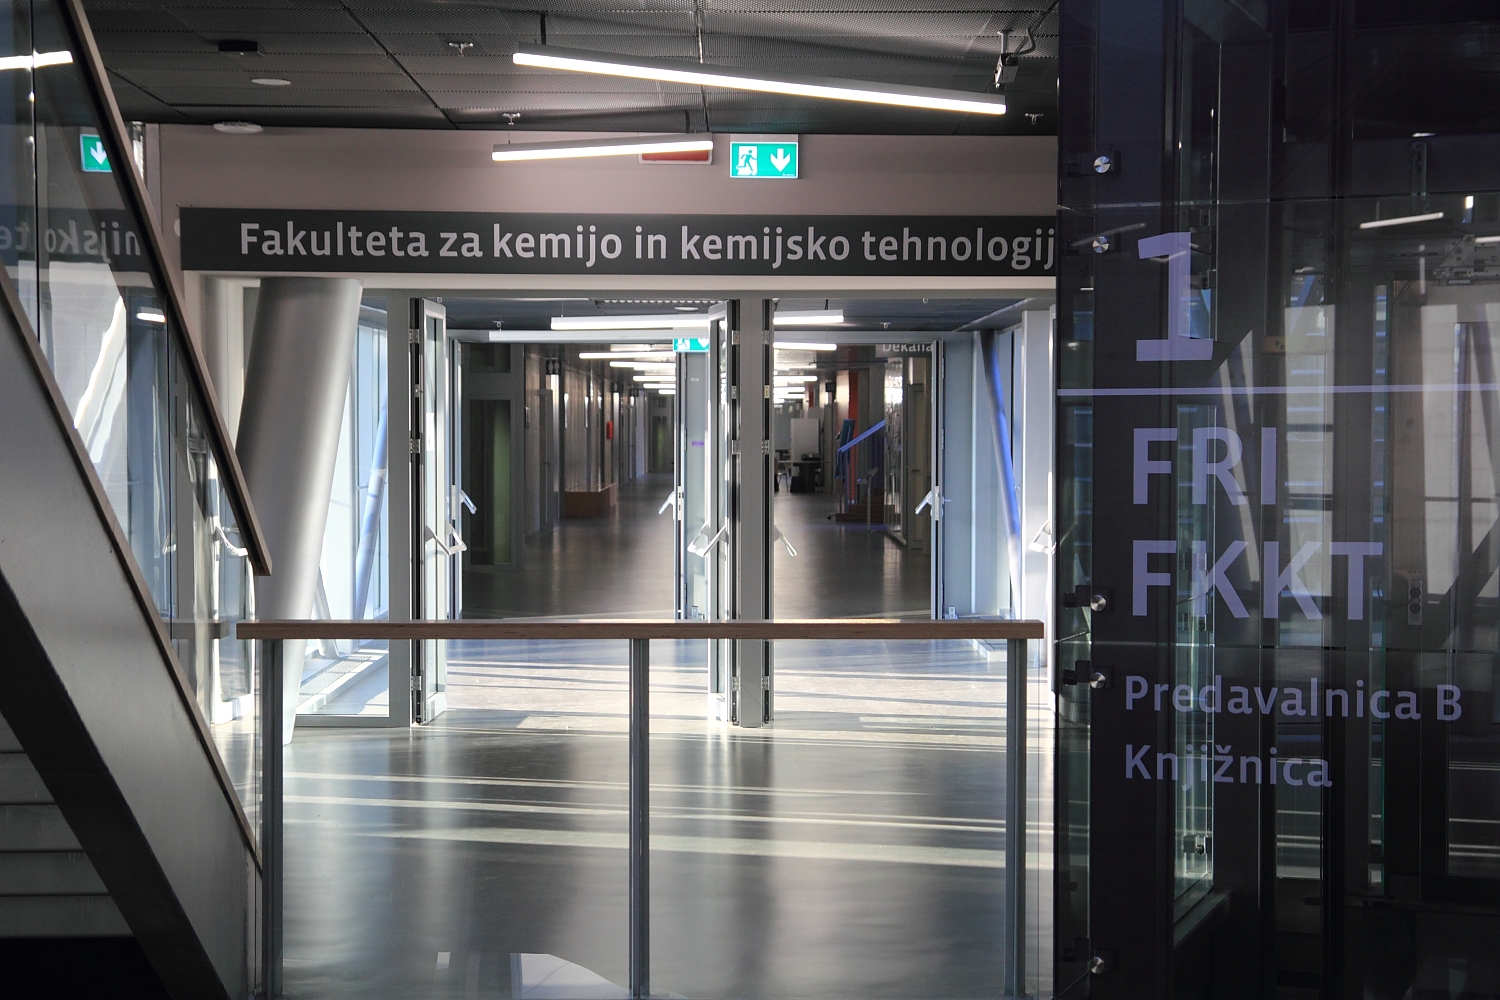 FRI和FKKT学院导视系统 © Ivan Pucić